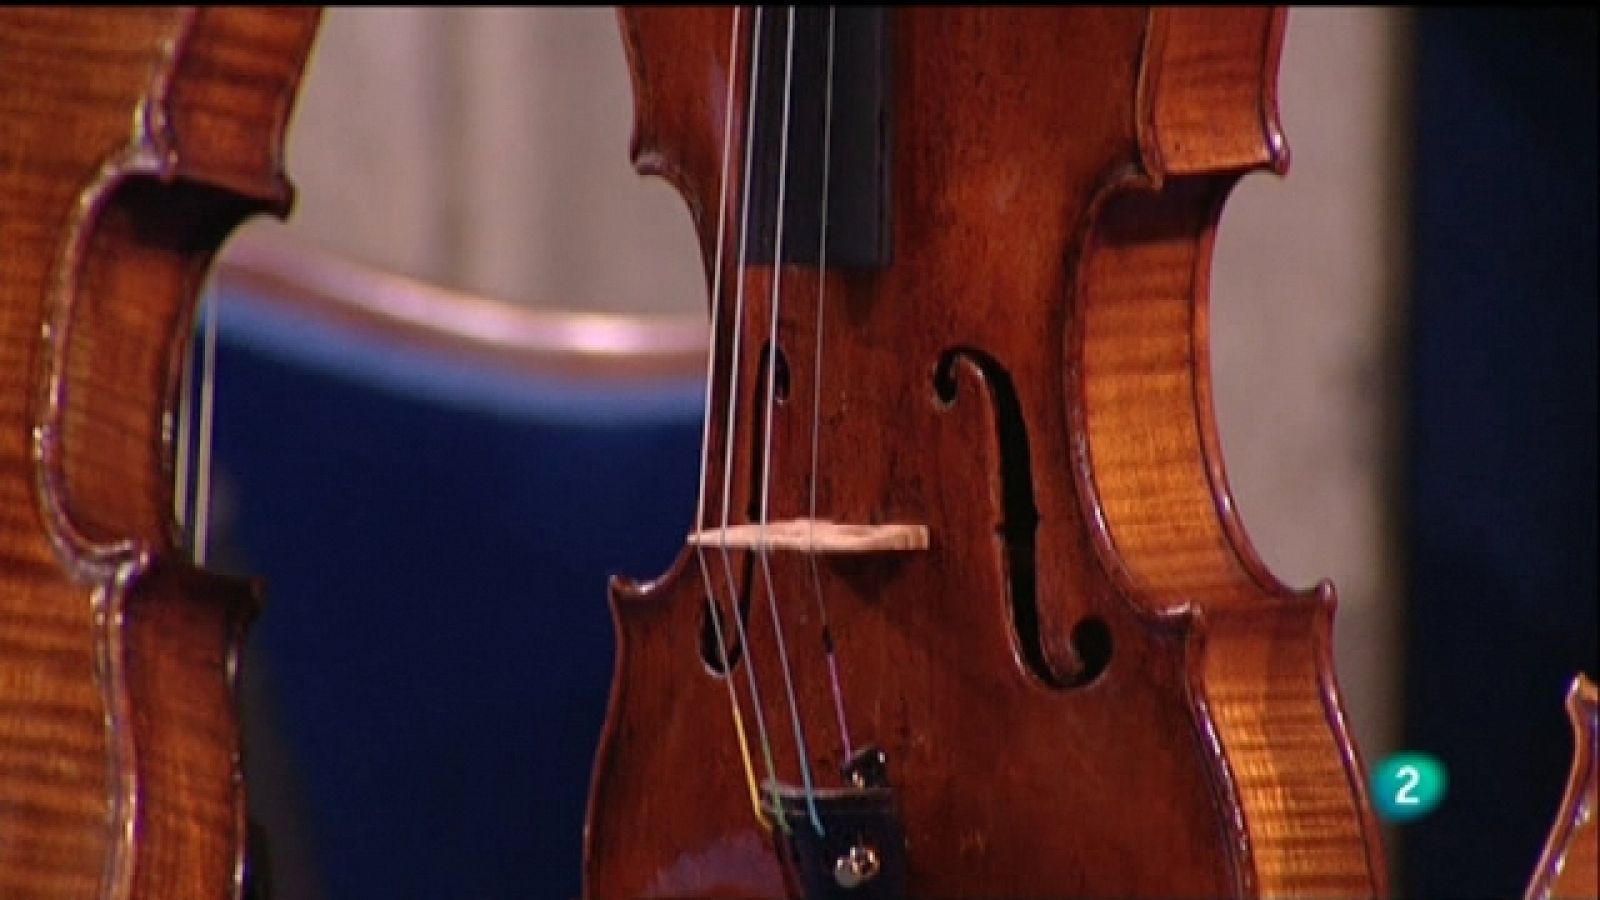 Shalom - Violines de la memoria, violines de la esperanza